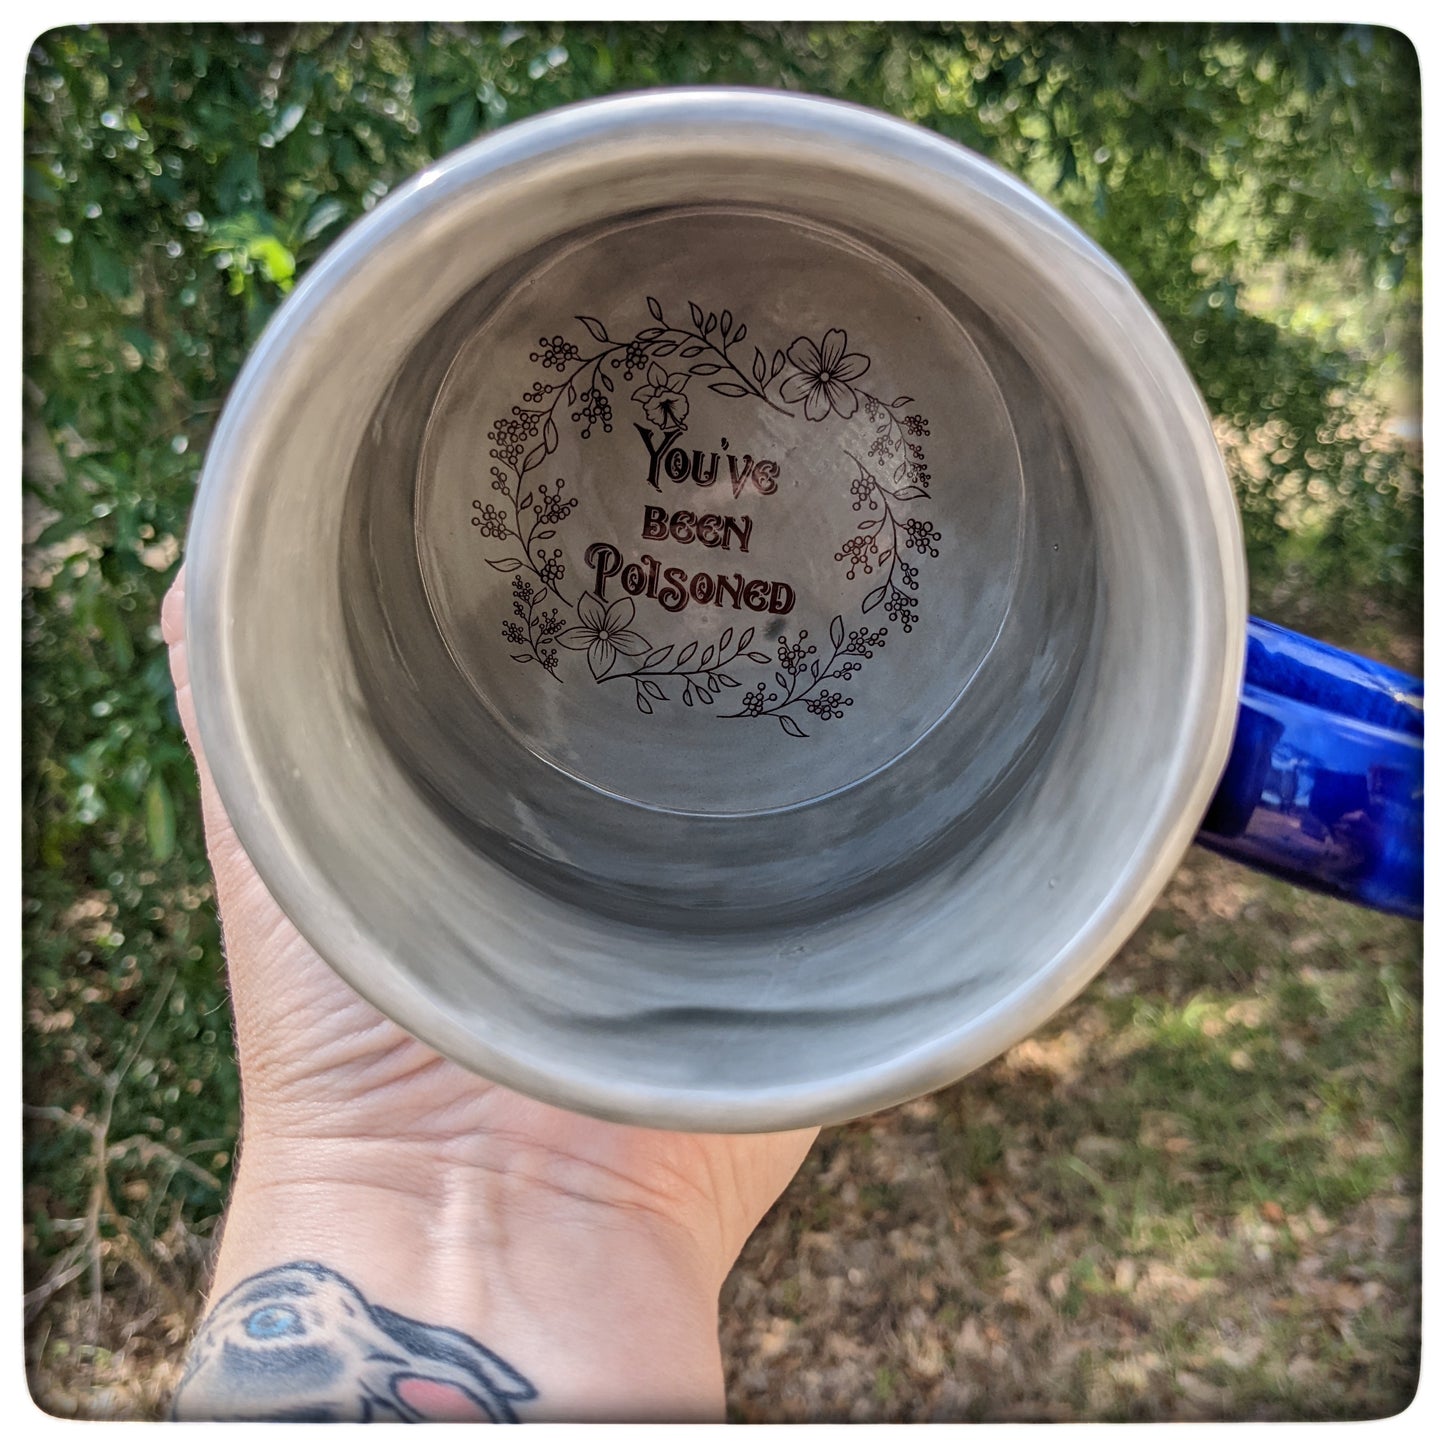 "You've Been Poisoned" mug